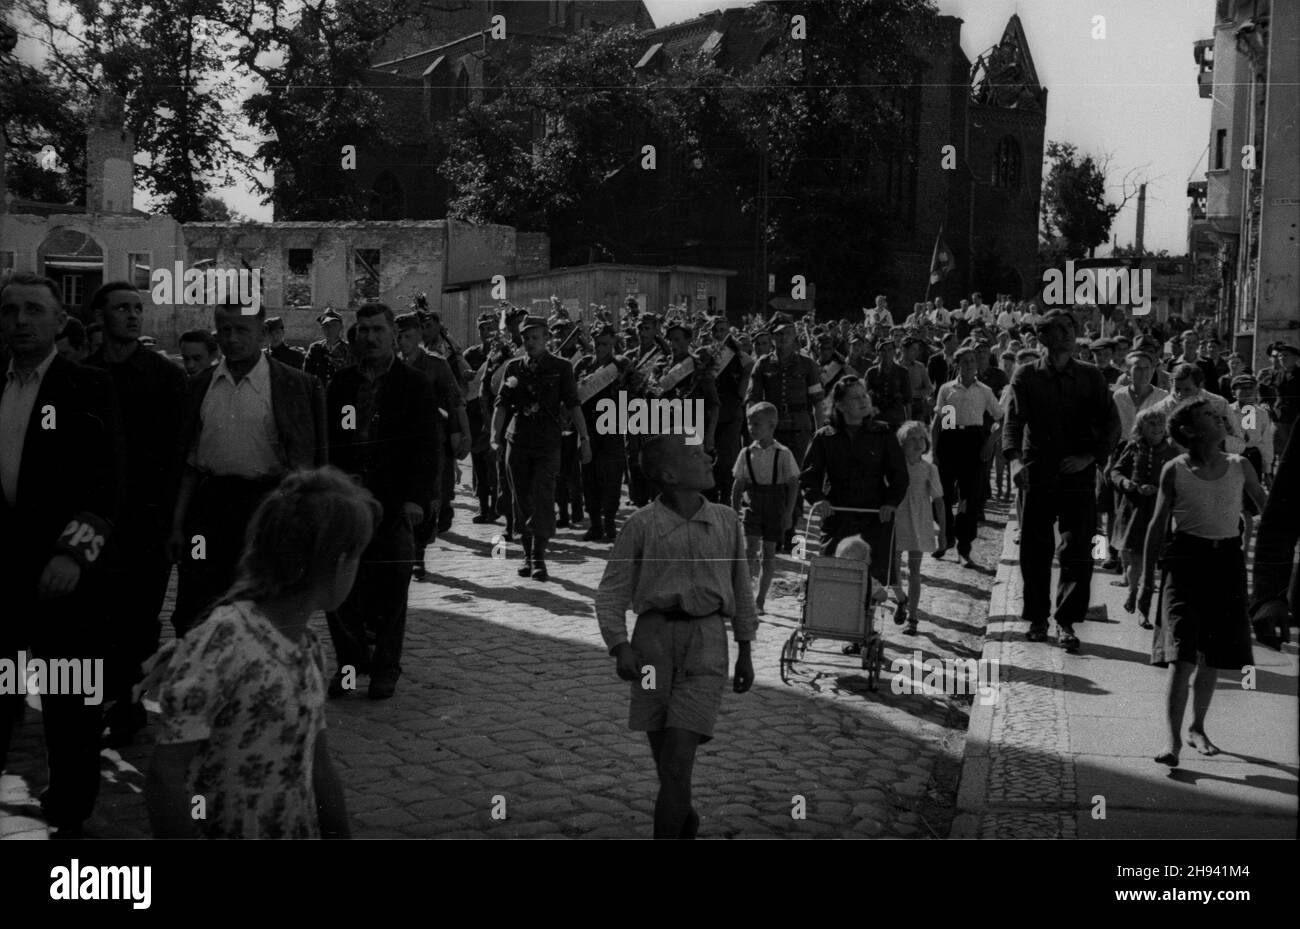 Goleniów, 1947-07. Sztafeta pod has³em - Szlakiem I Armii Wojska Polskiego, towarzysz¹ca obchodom Œwiêta Morza (Dni Morza). Nz. oddzia³ piechoty maszeruje ulicami miasta. po/gr  PAP    Dok³adny dzieñ wydarzenia nieustalony.      Goleniow, July 1947. A relay under the slogan: following the route of the 1 Polish Army which accompany the Days of the Sea. Pictured: soldiers and civilians marching throughout the city.   po/gr  PAP Stock Photo